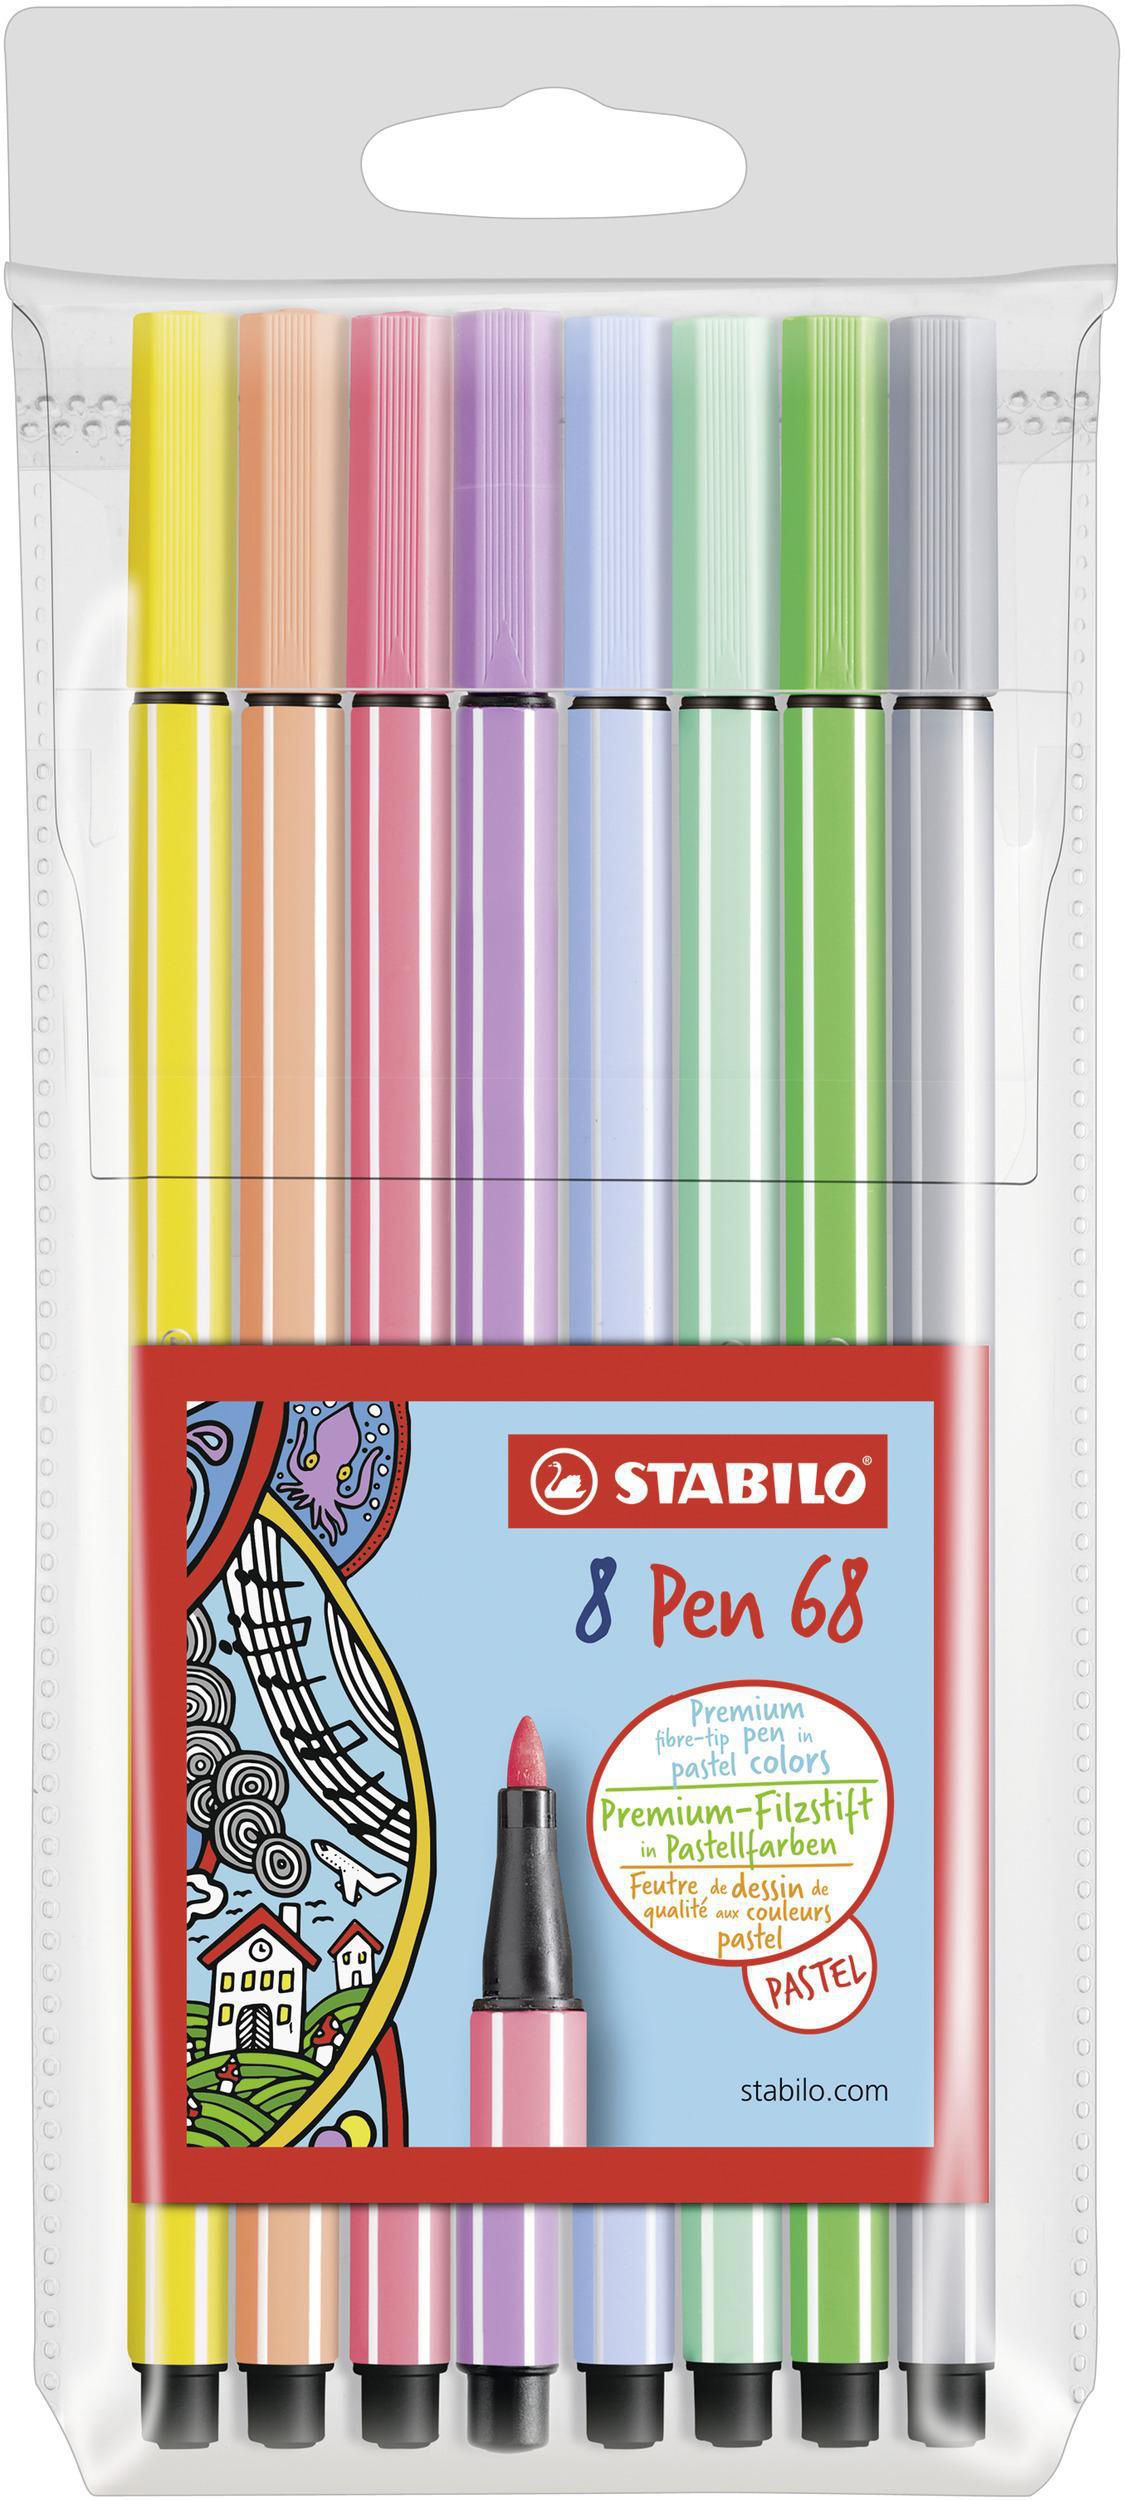 verschiedene Premium Filzstift, Pen Pack 8 Pastellfarben STABILO 8er 68,